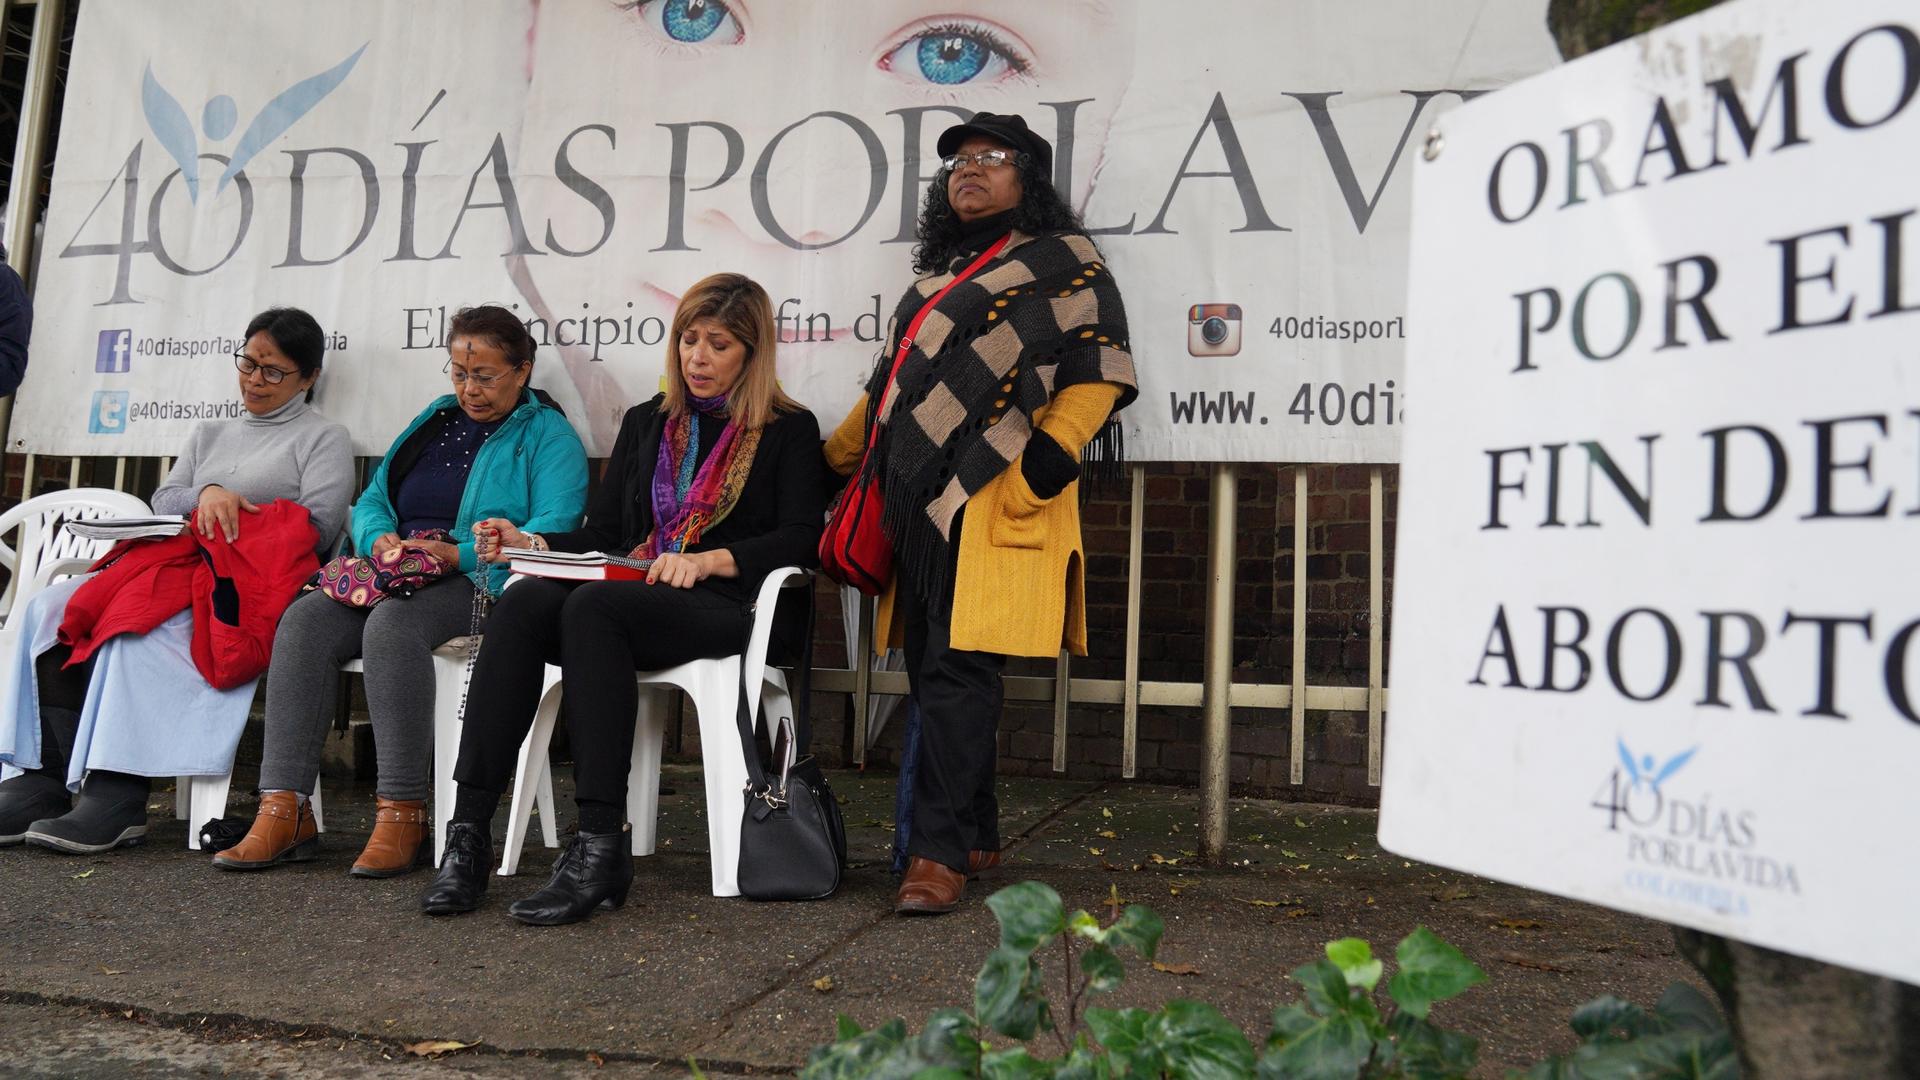 Four women pray outside at an anti-abortion vigil.